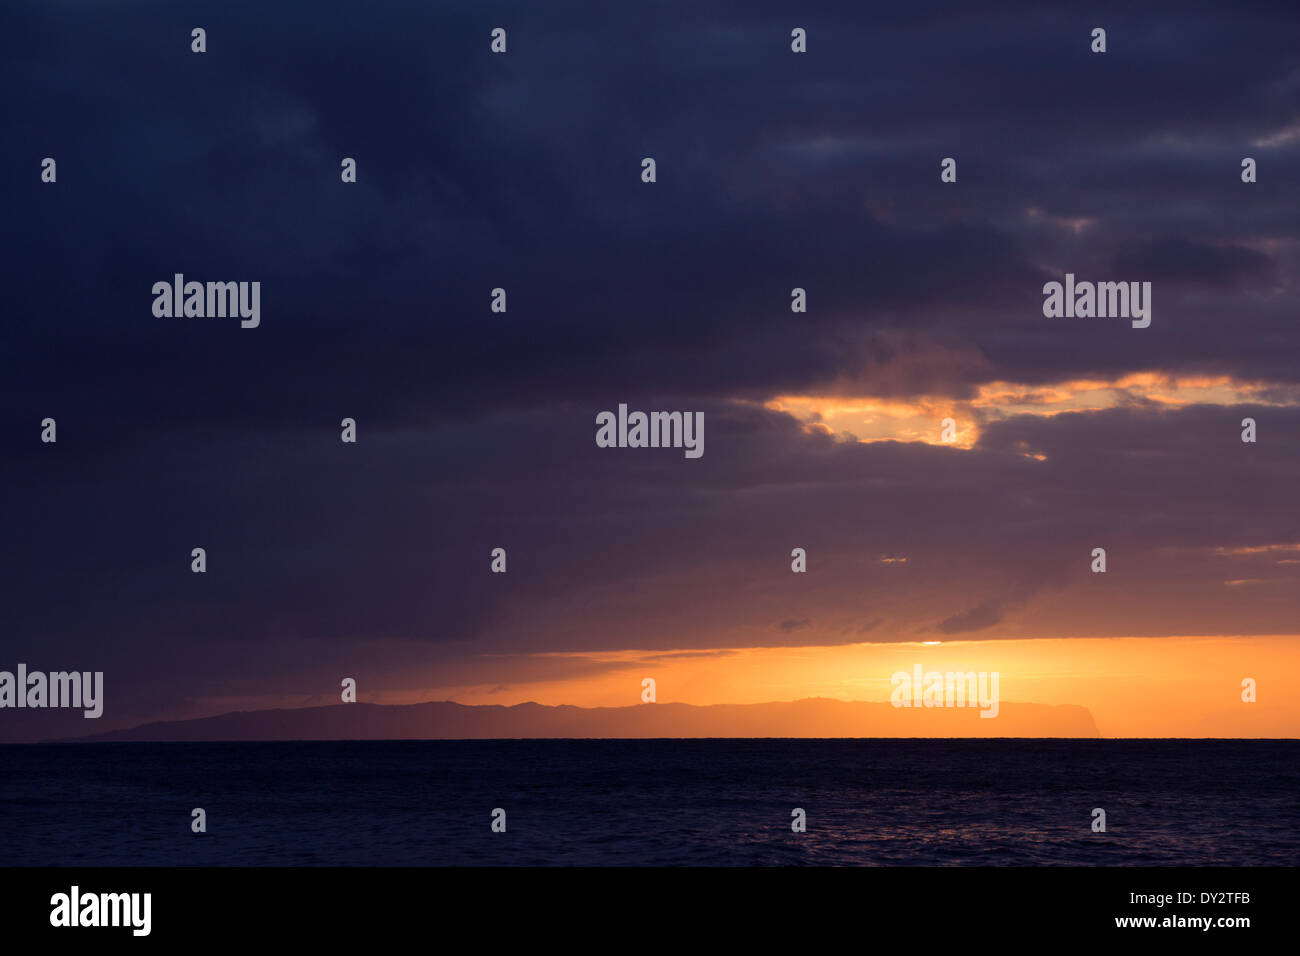 Vue sur l'île de Niihau depuis la côte ouest de Kauai au coucher du soleil Banque D'Images